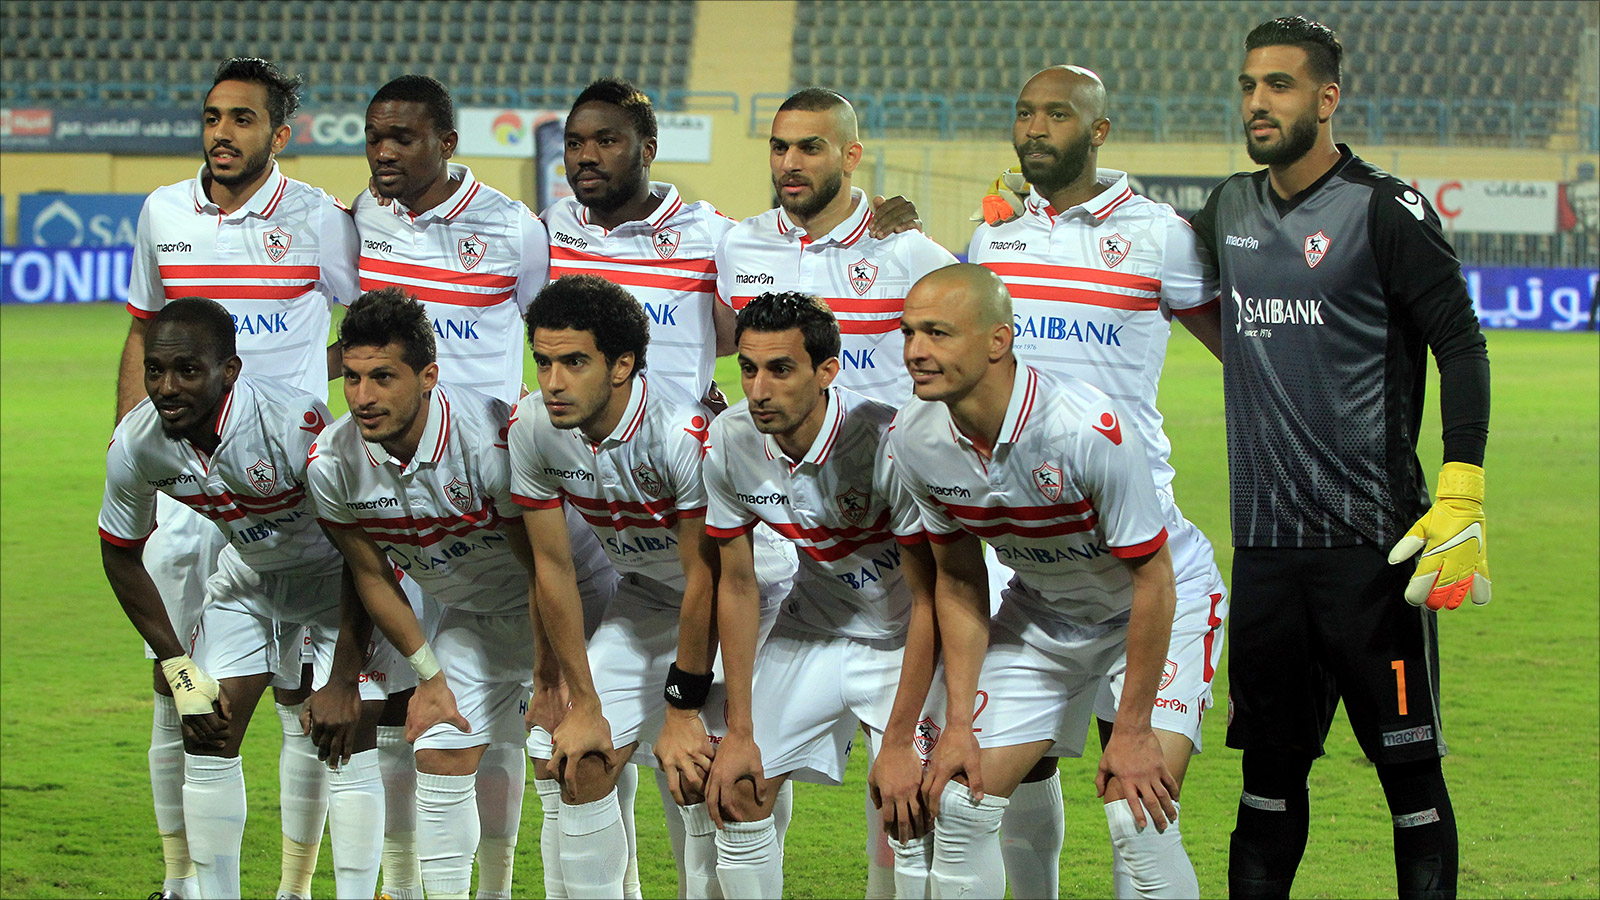 الزمالك خسر معركته للحفاظ على لقب الدوري بتعادله مع المصري البورسعيدي (الأوروبية)